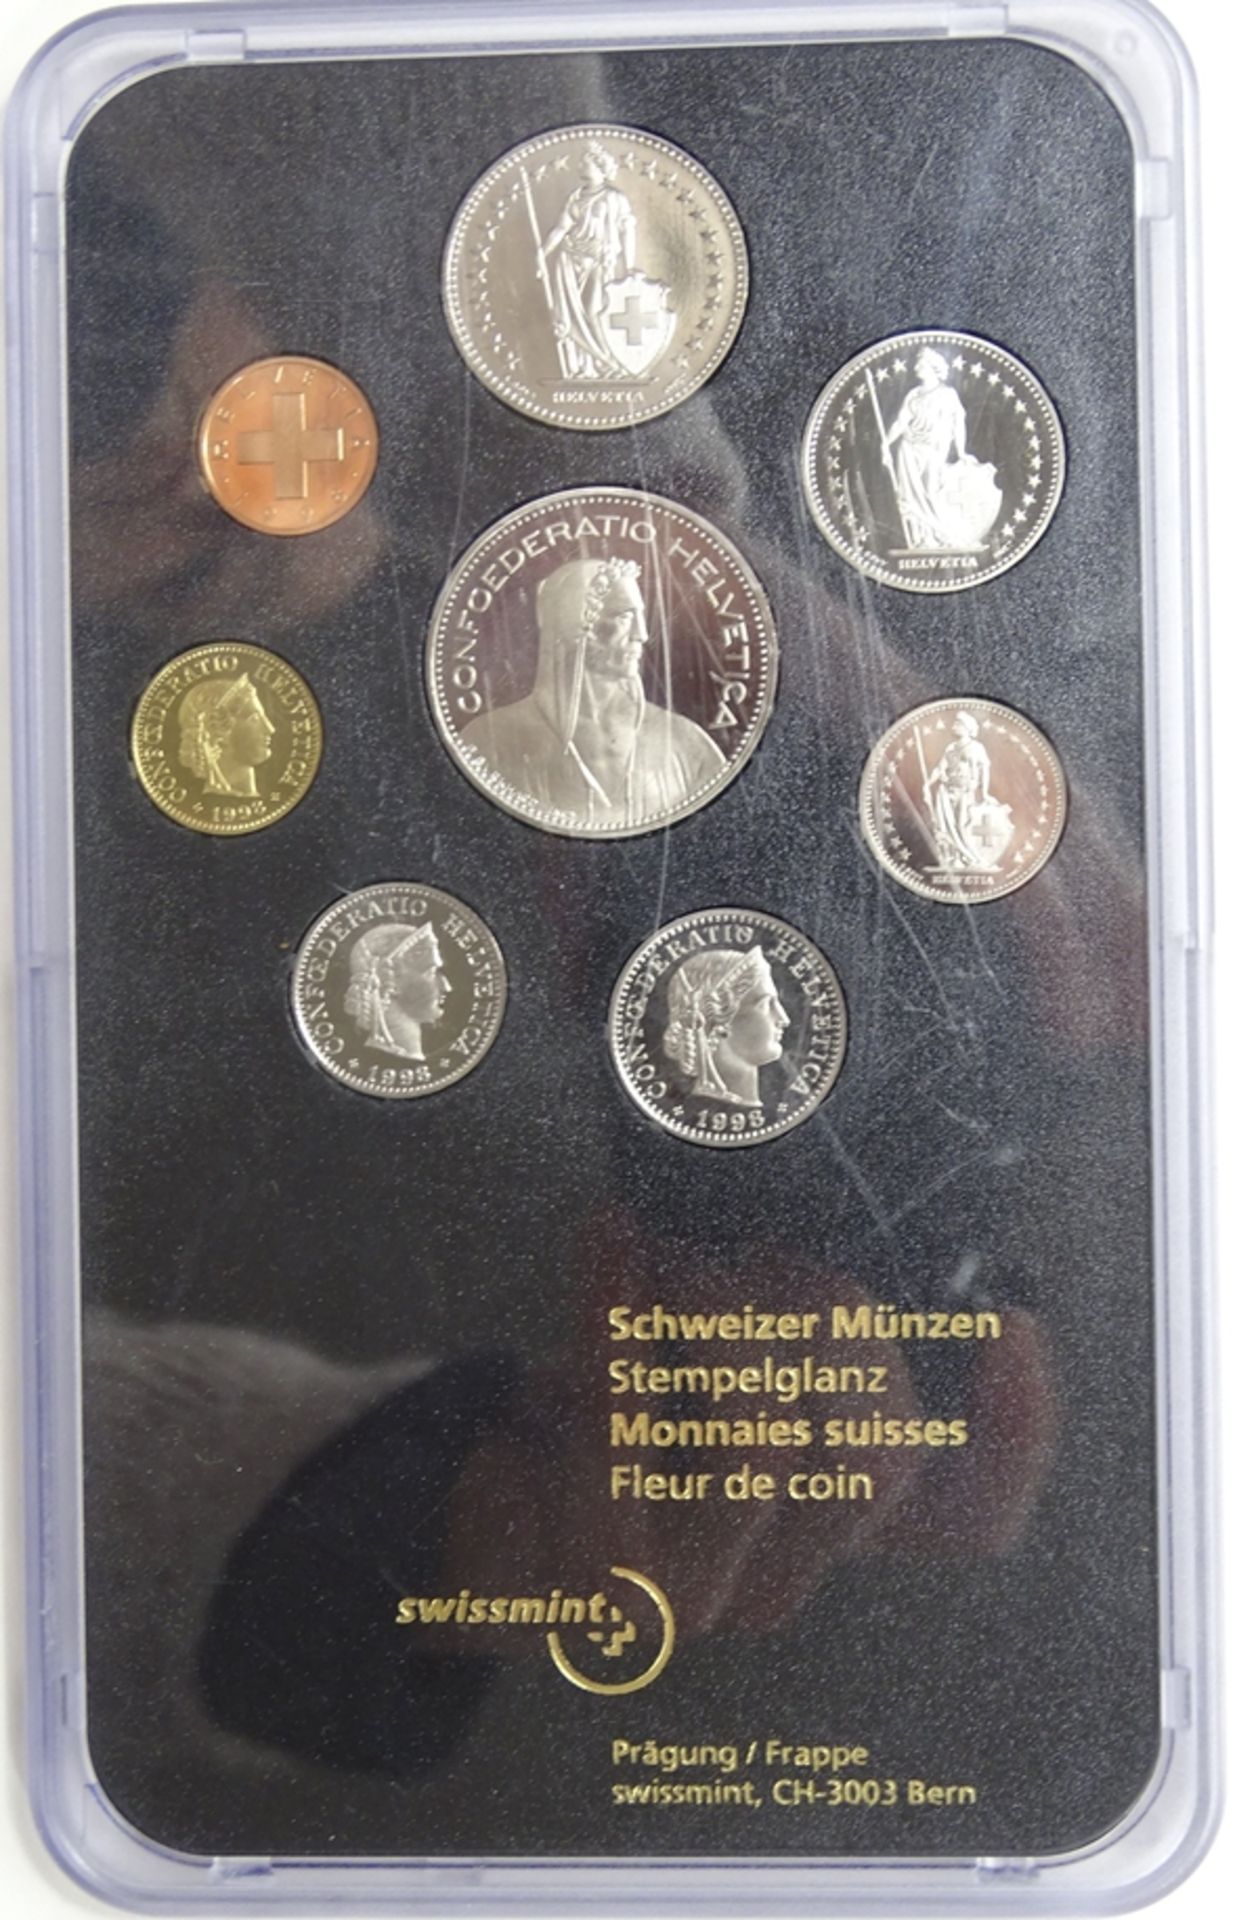 Münzsatz Schweizer Franken 1998, 8,86 CHF, in Schatulle - Image 3 of 3